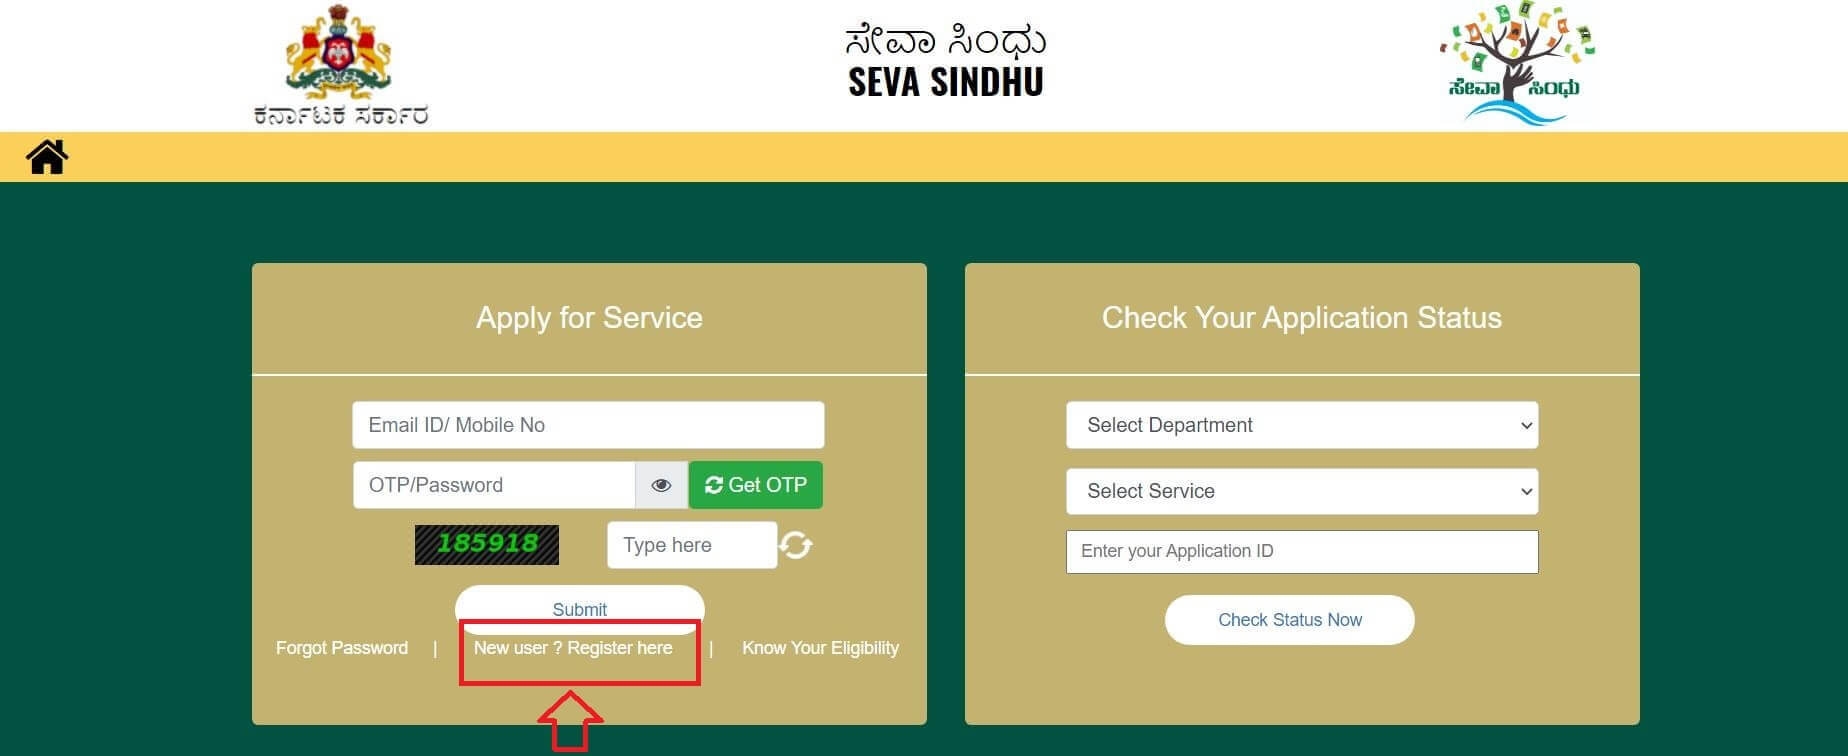 SEVA SINDHU Portal New registration